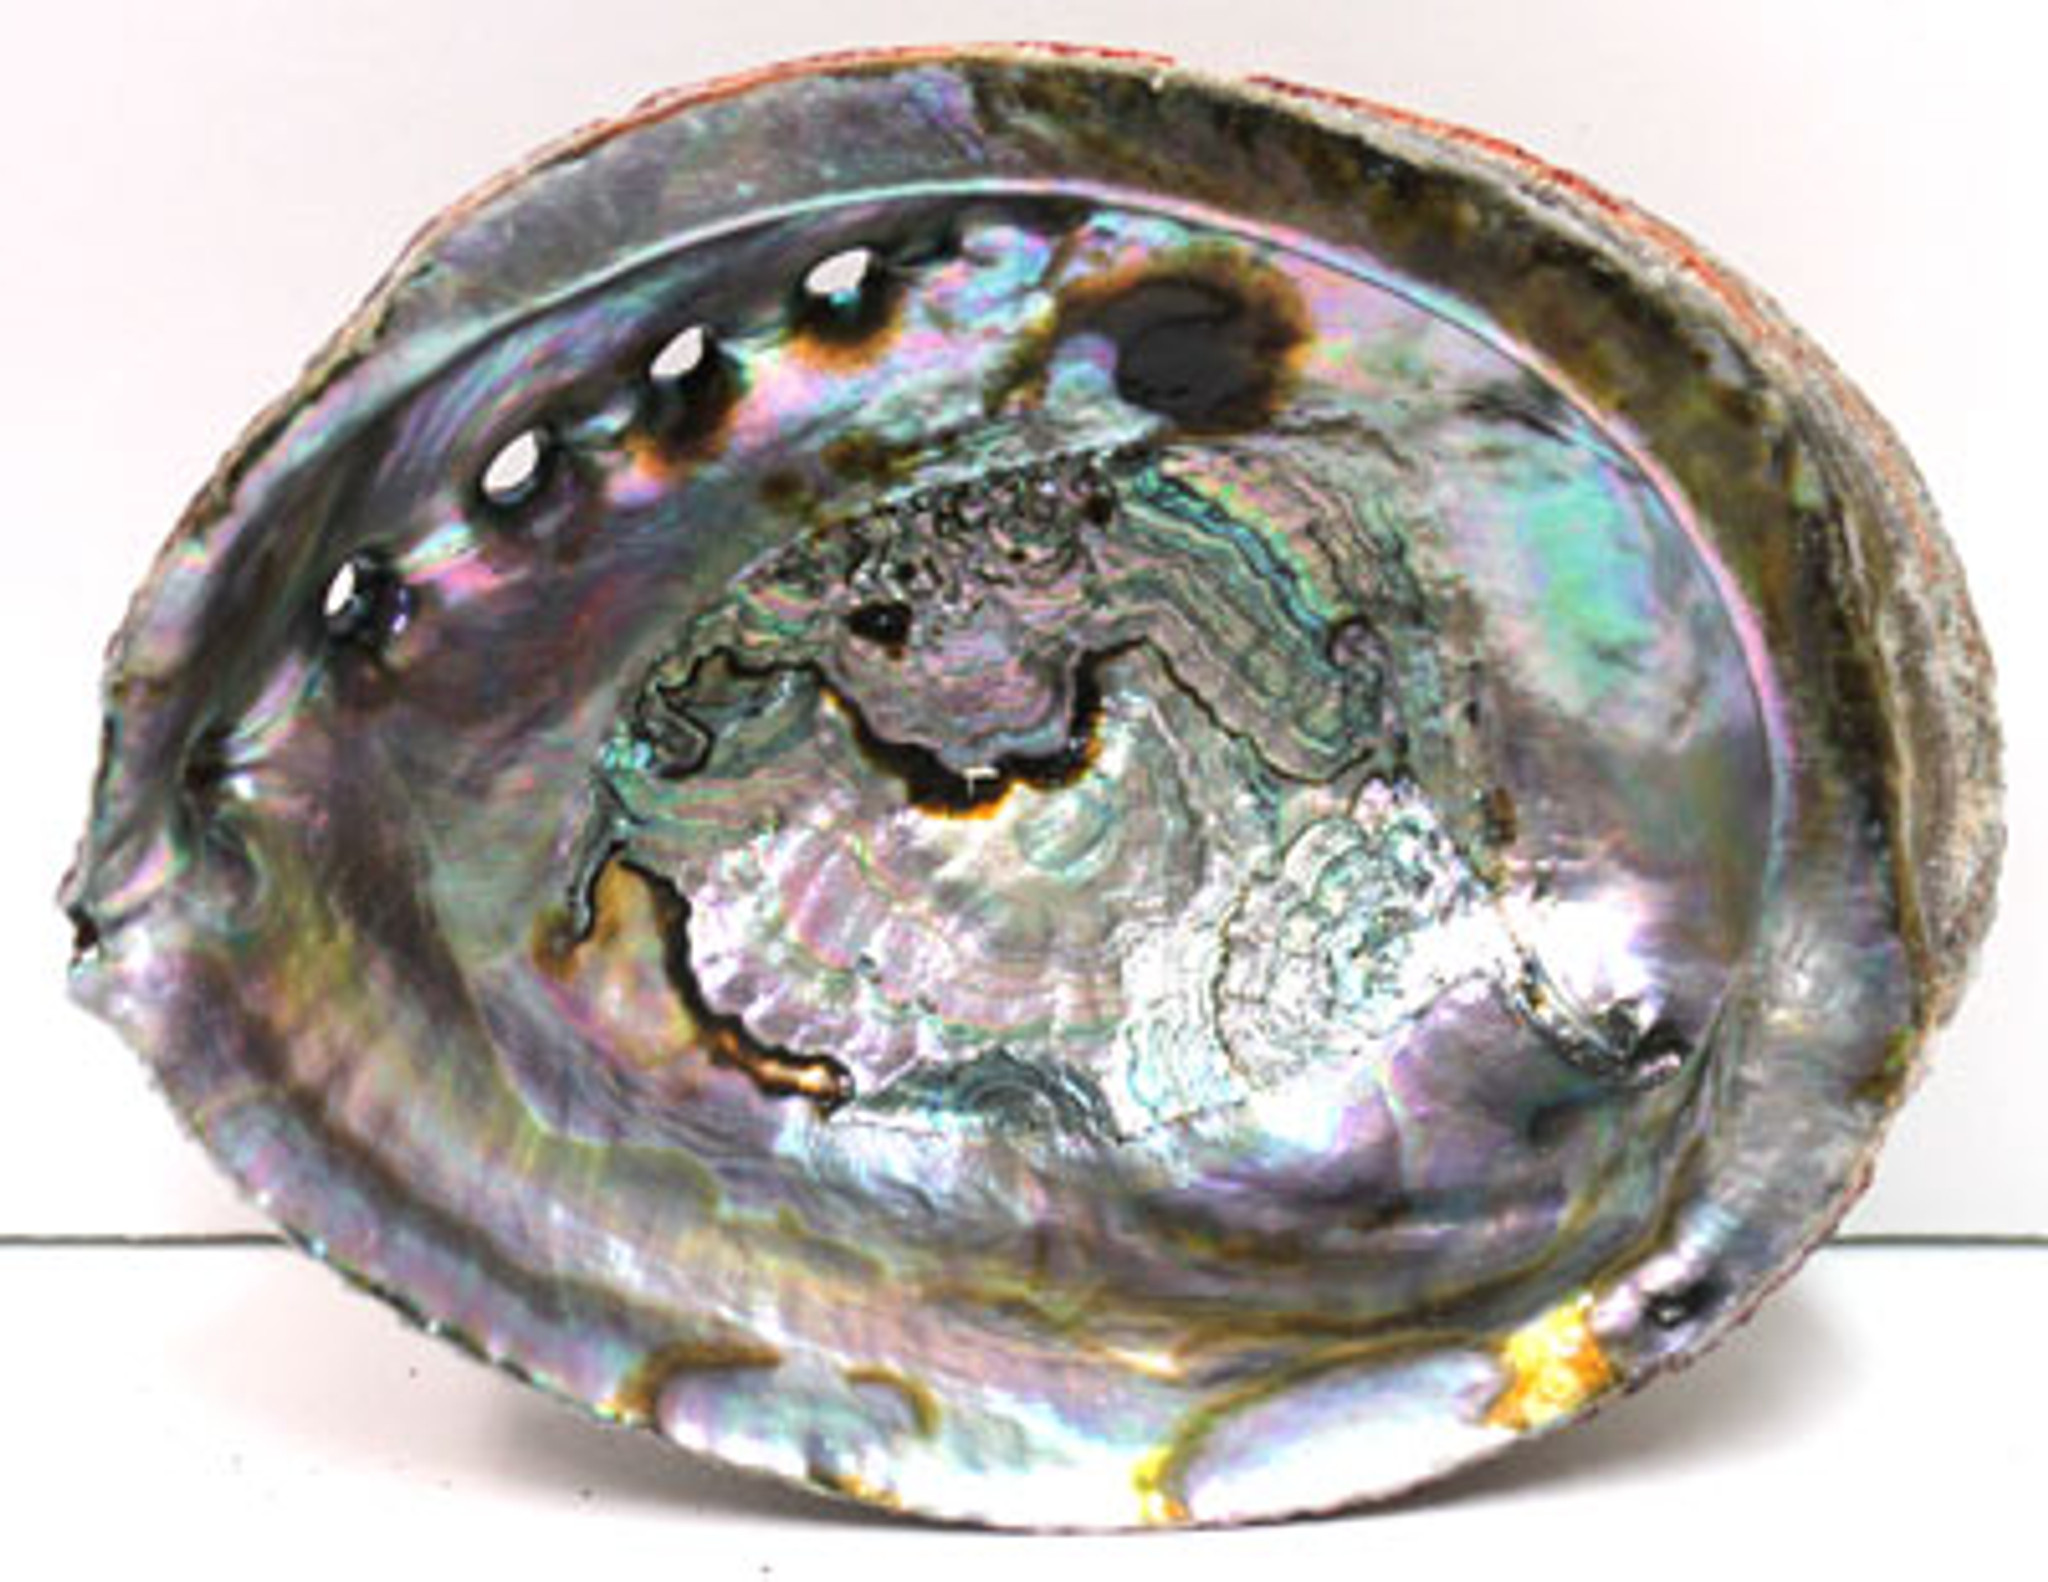 Blue & Green Abalone Seashells - Ear Shells - California Seashell Company